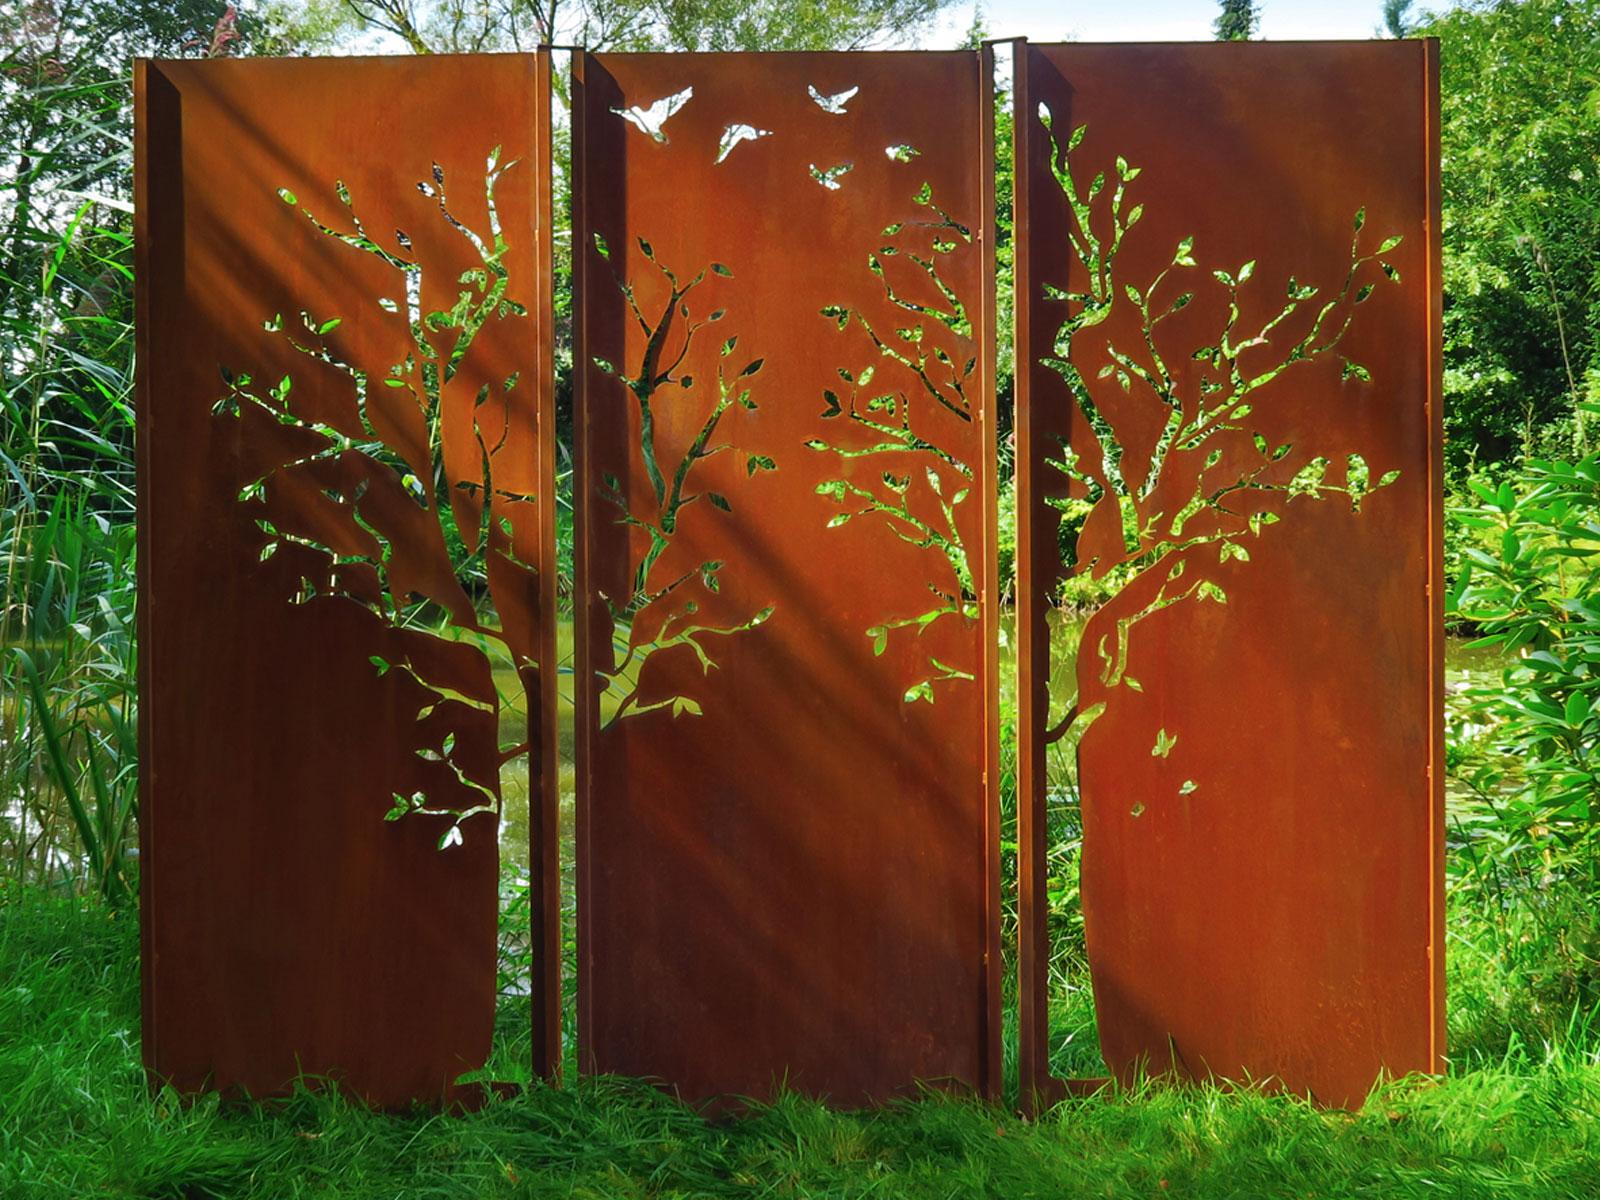 Steel Garden Wall - "Triptych Tree" - Modern Outdoor Ornament - 225 x 195 cm - Sculpture by Stefan Traloc